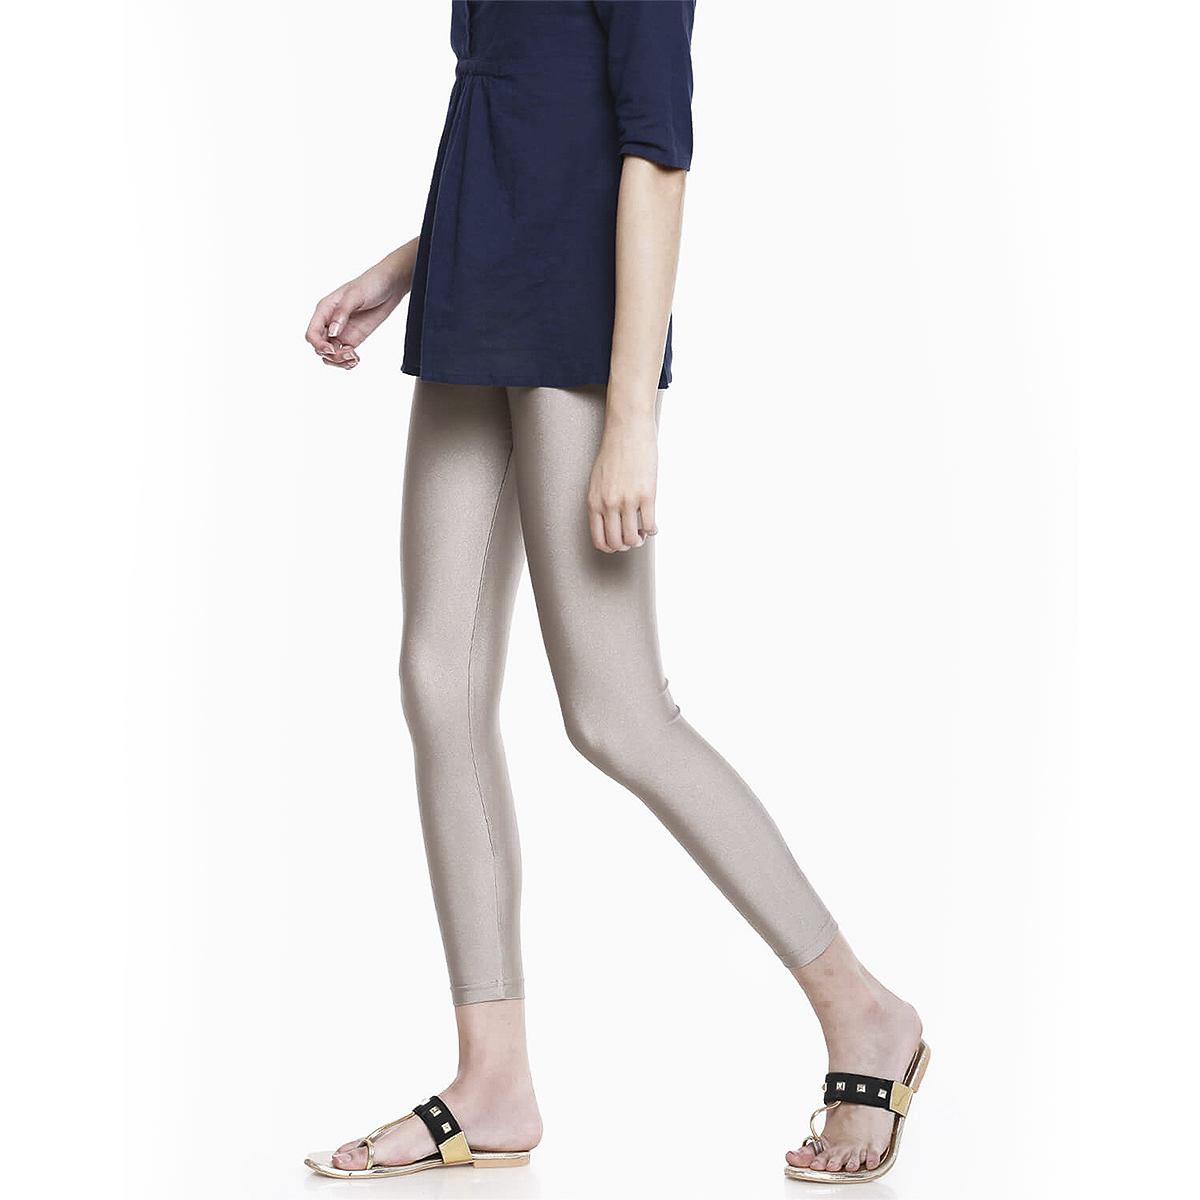 Go Colors Women Ankle Length Shimmer Legging - Copper